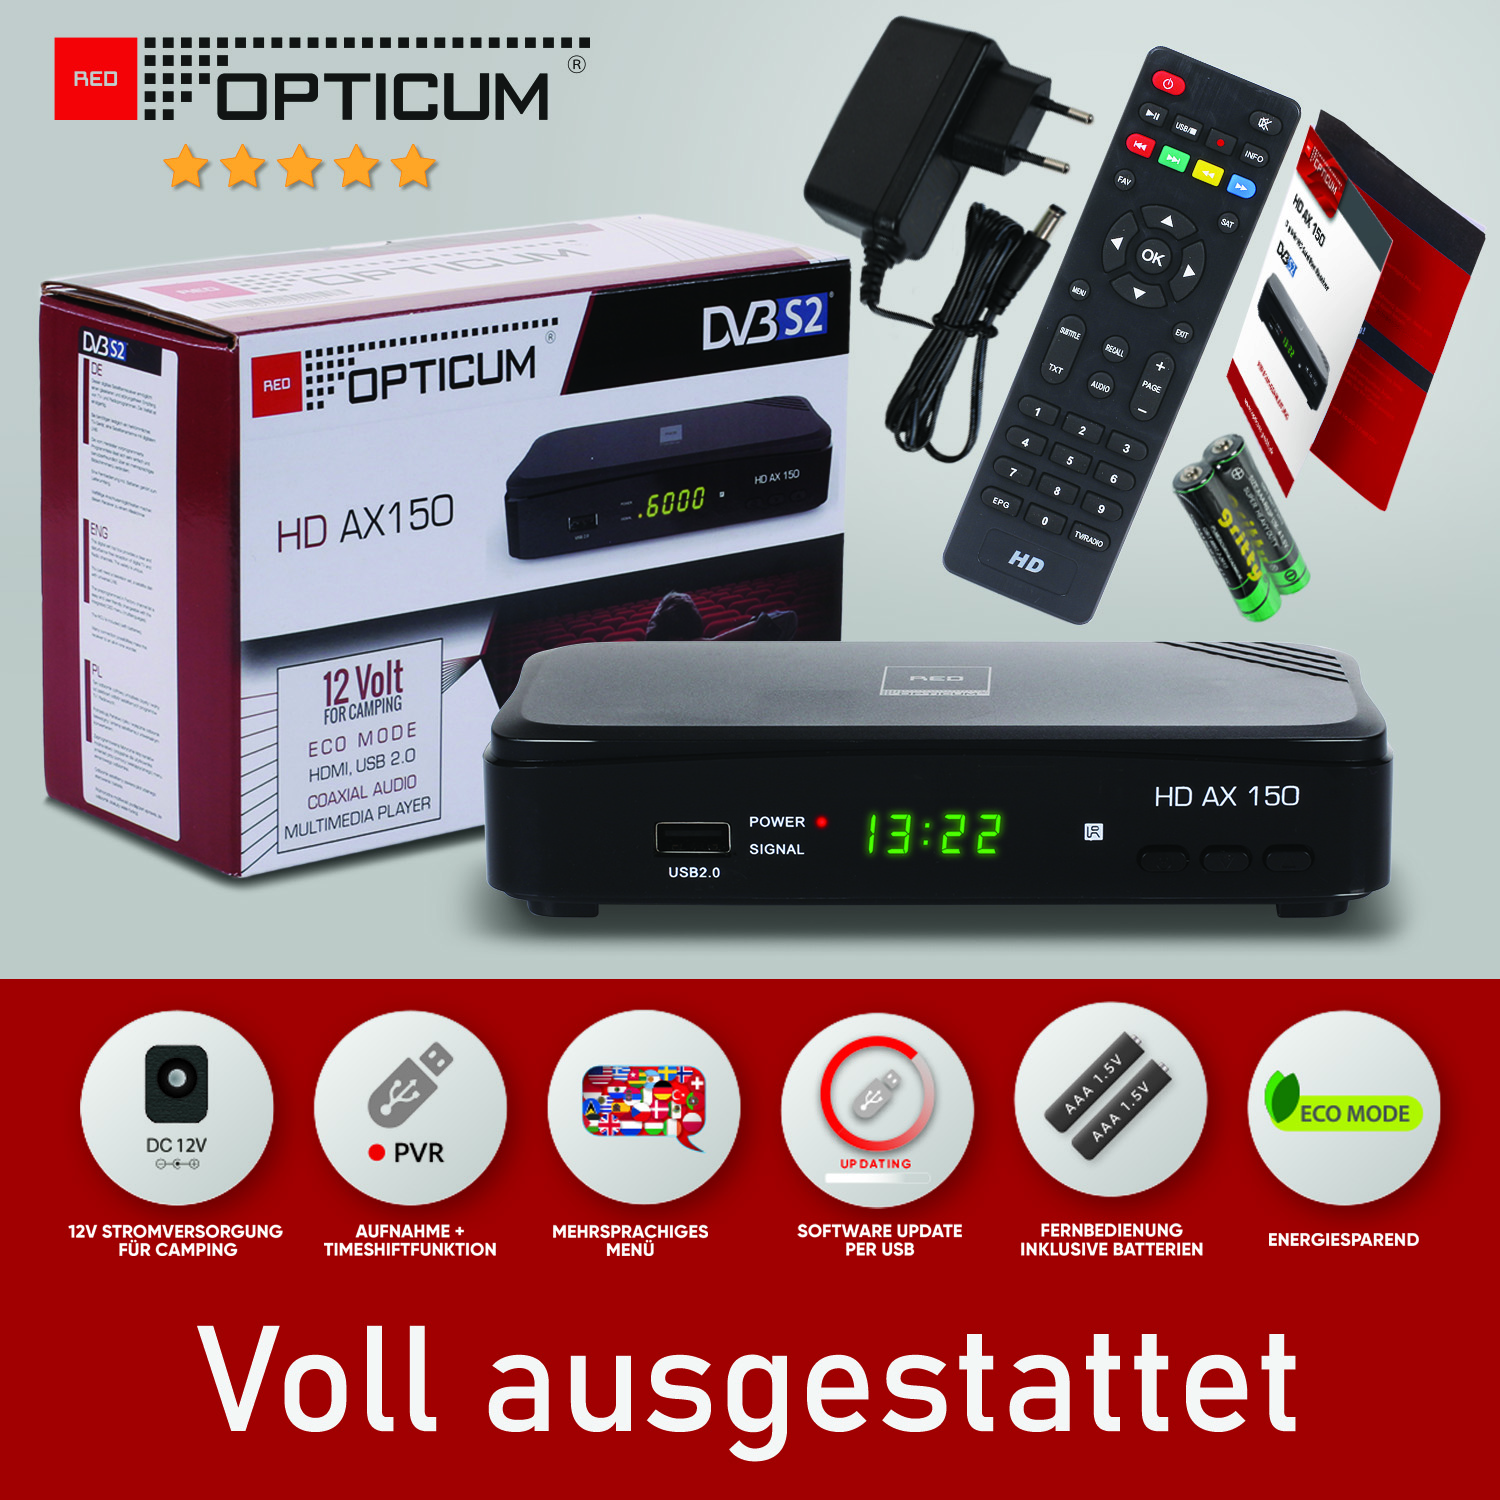 RED OPTICUM Opticum AX schwarz) (HDTV, Sat-Receiver DVB-S2, PVR-Funktion, mit PVR DVB-S, 150